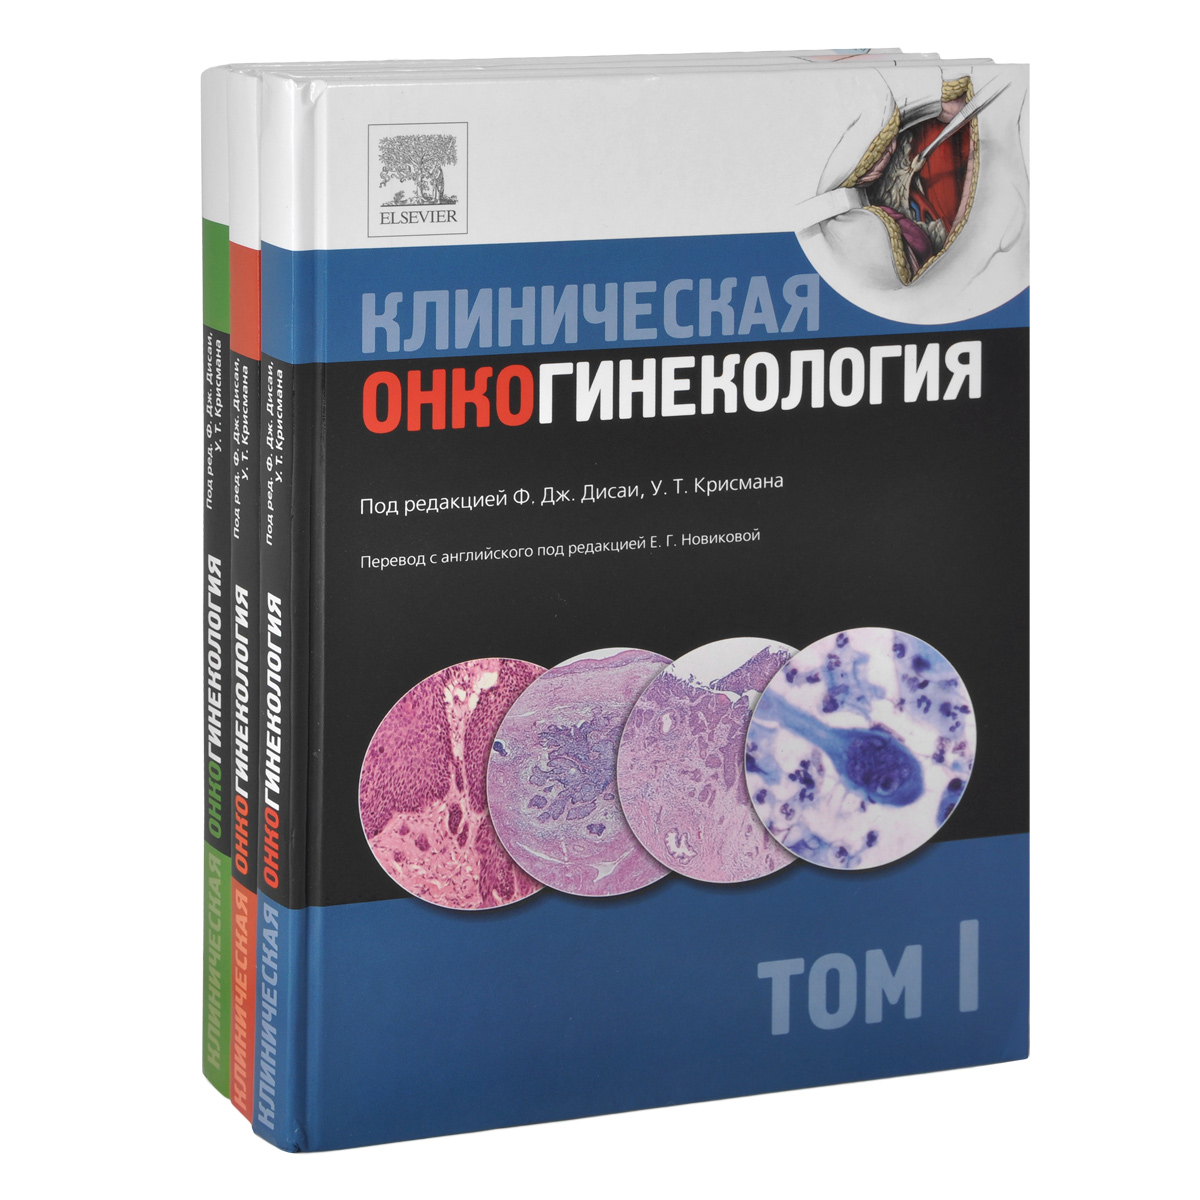 Клиническая онкогинекология. В 3 томах (комплект из 3 книг)